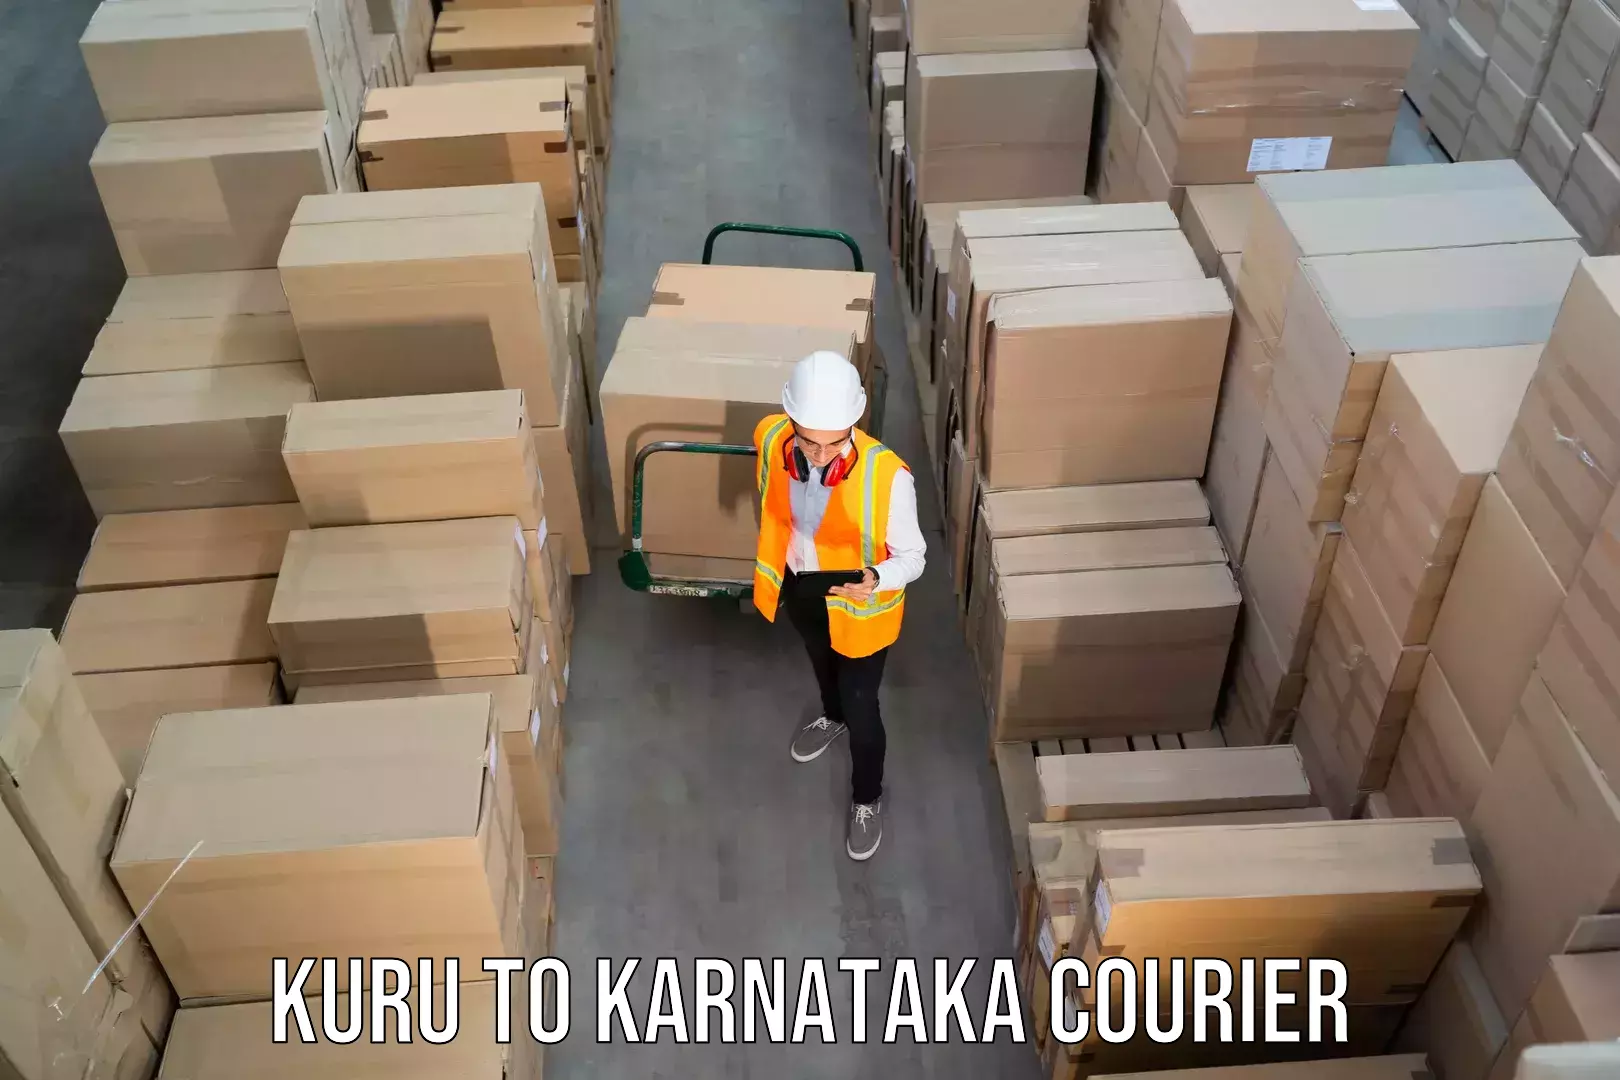 Shipping and handling in Kuru to Karnataka